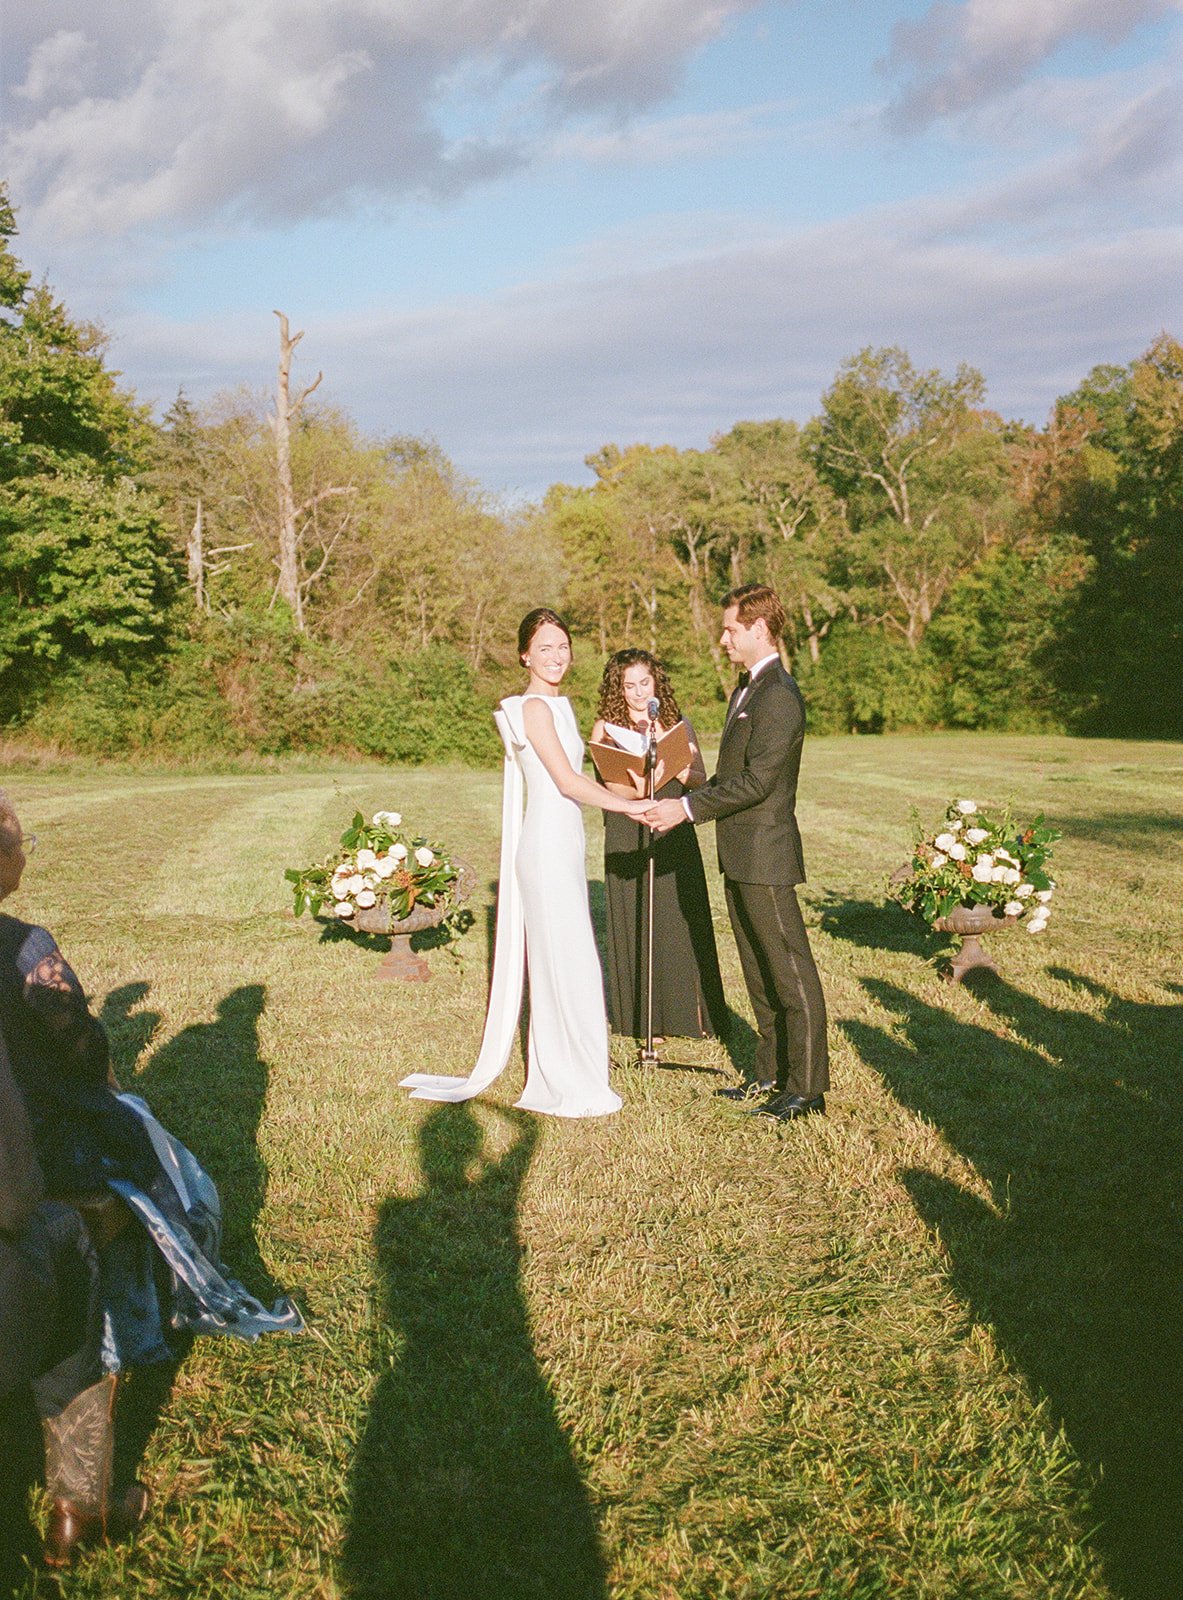 weddings on film.jpg